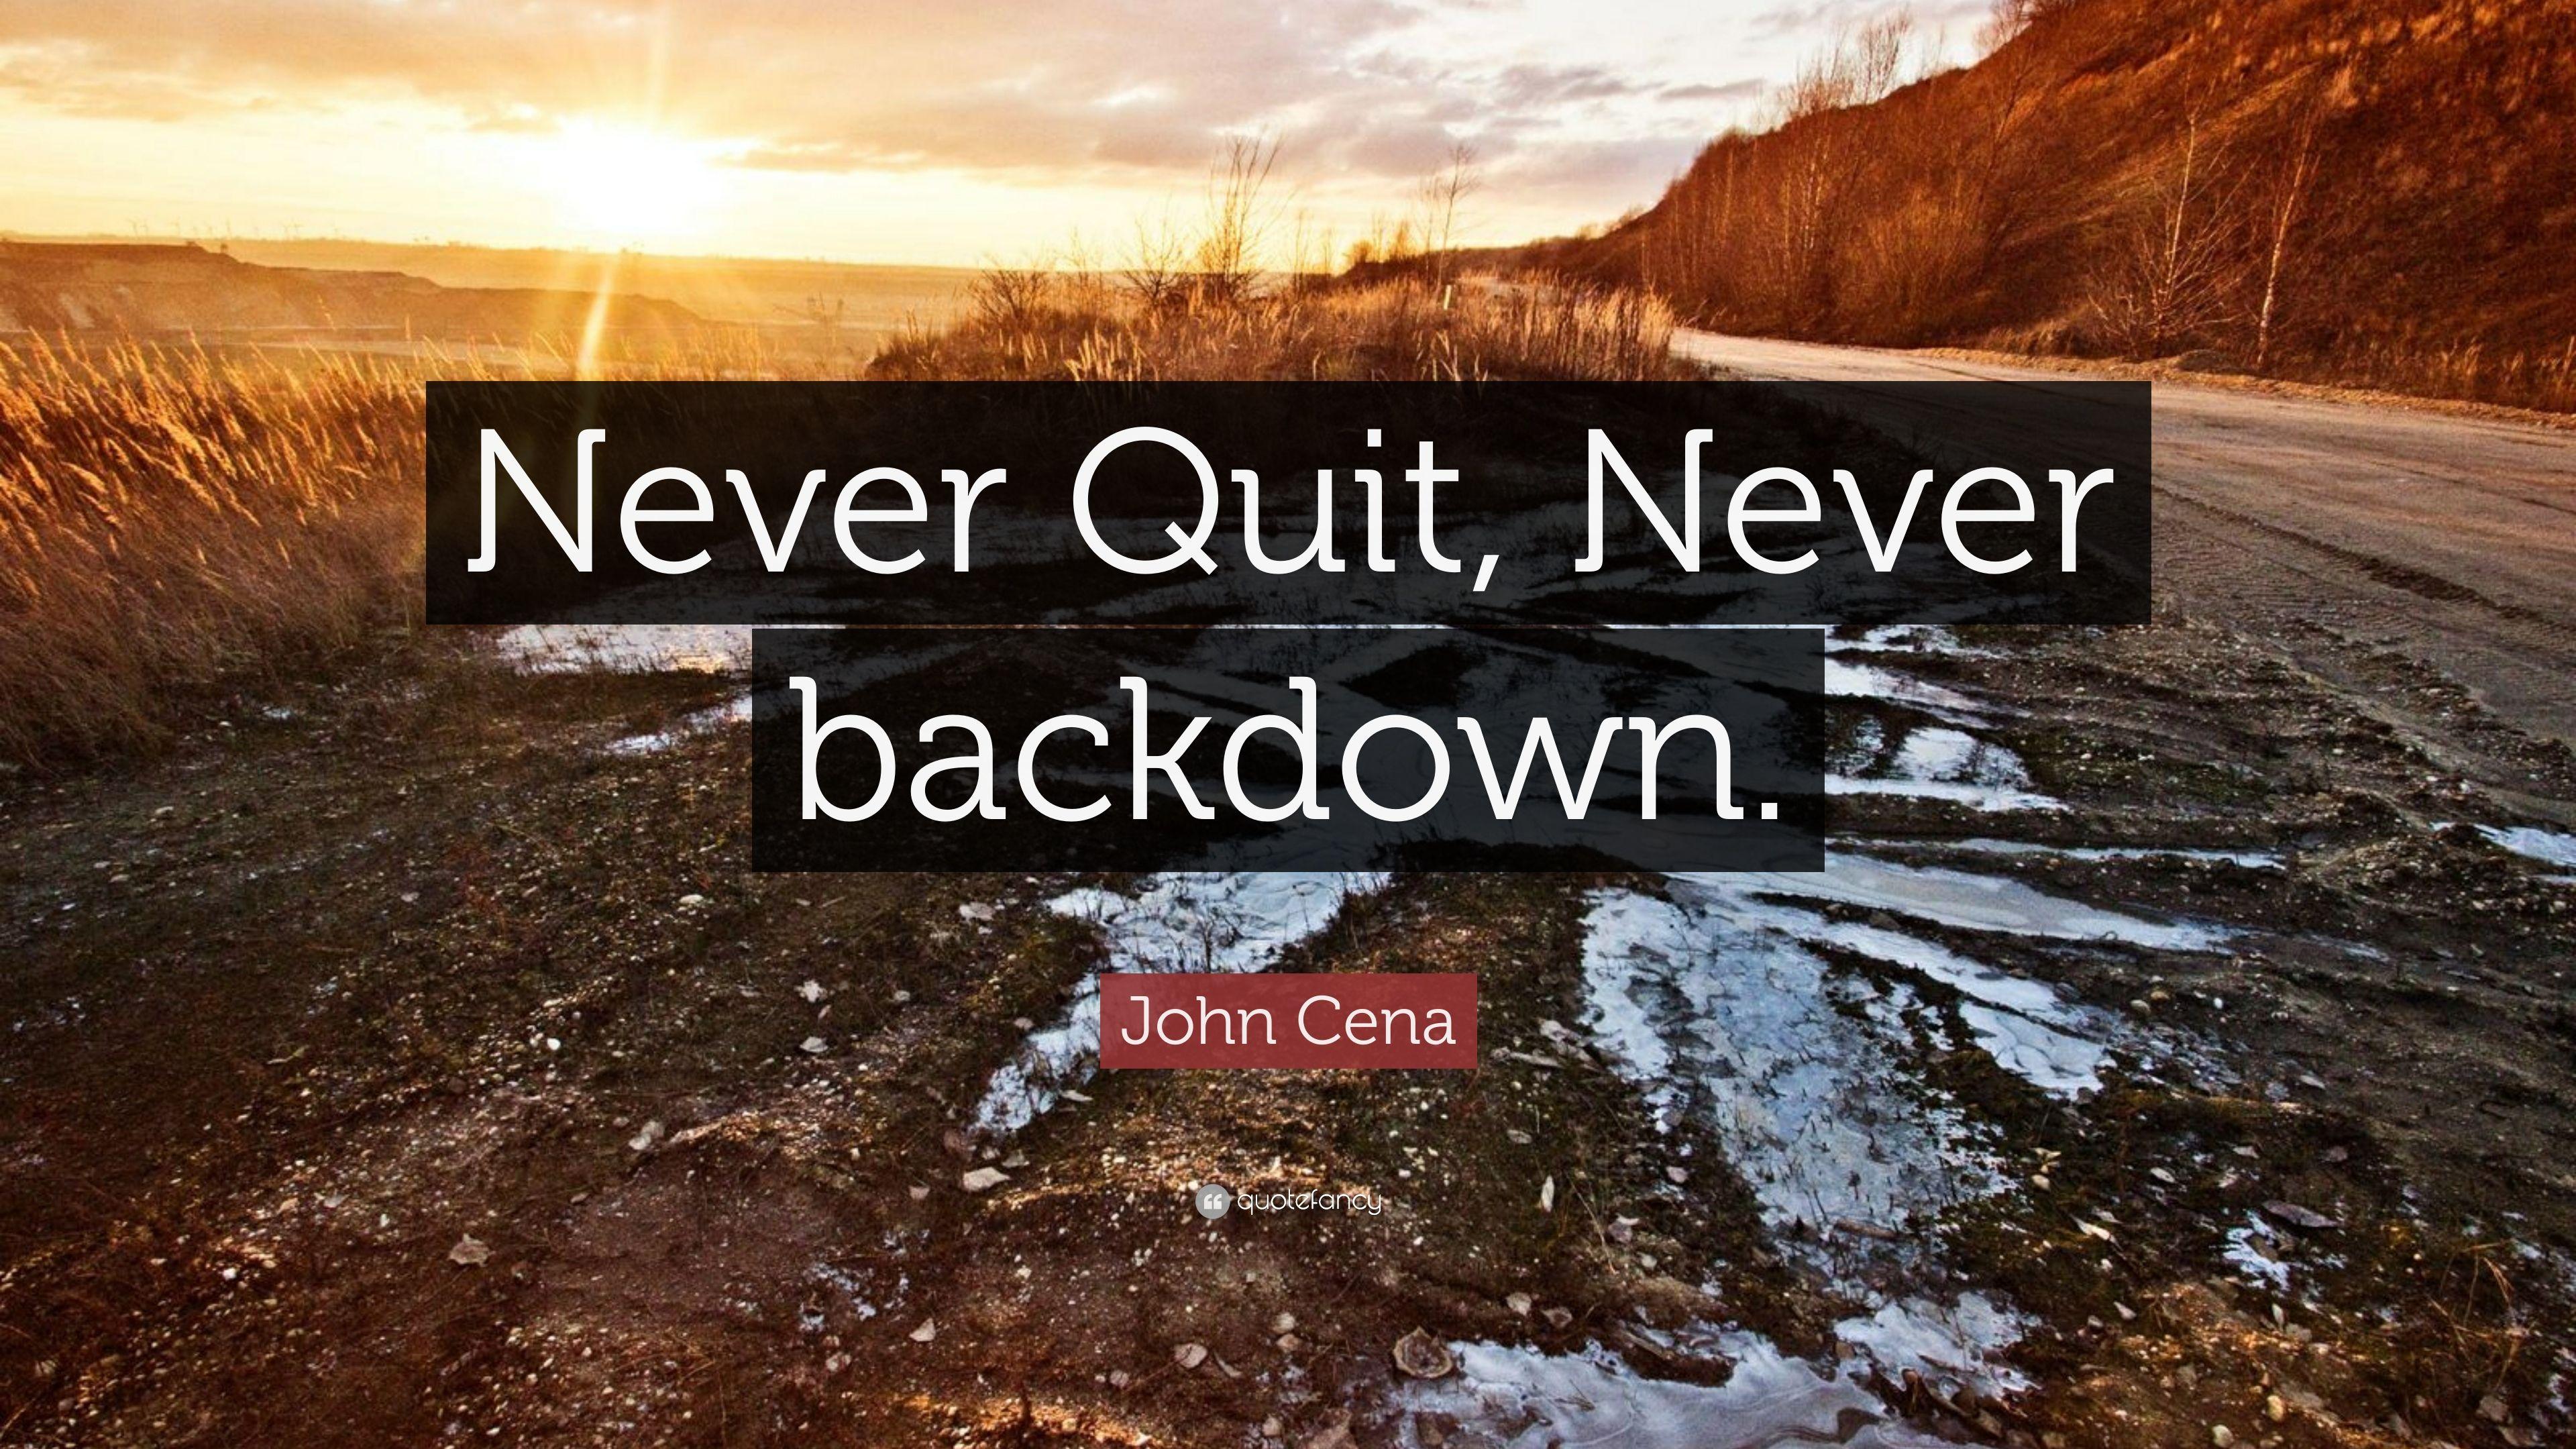 John Cena Quote: “Never Quit, Never backdown.” 10 wallpaper